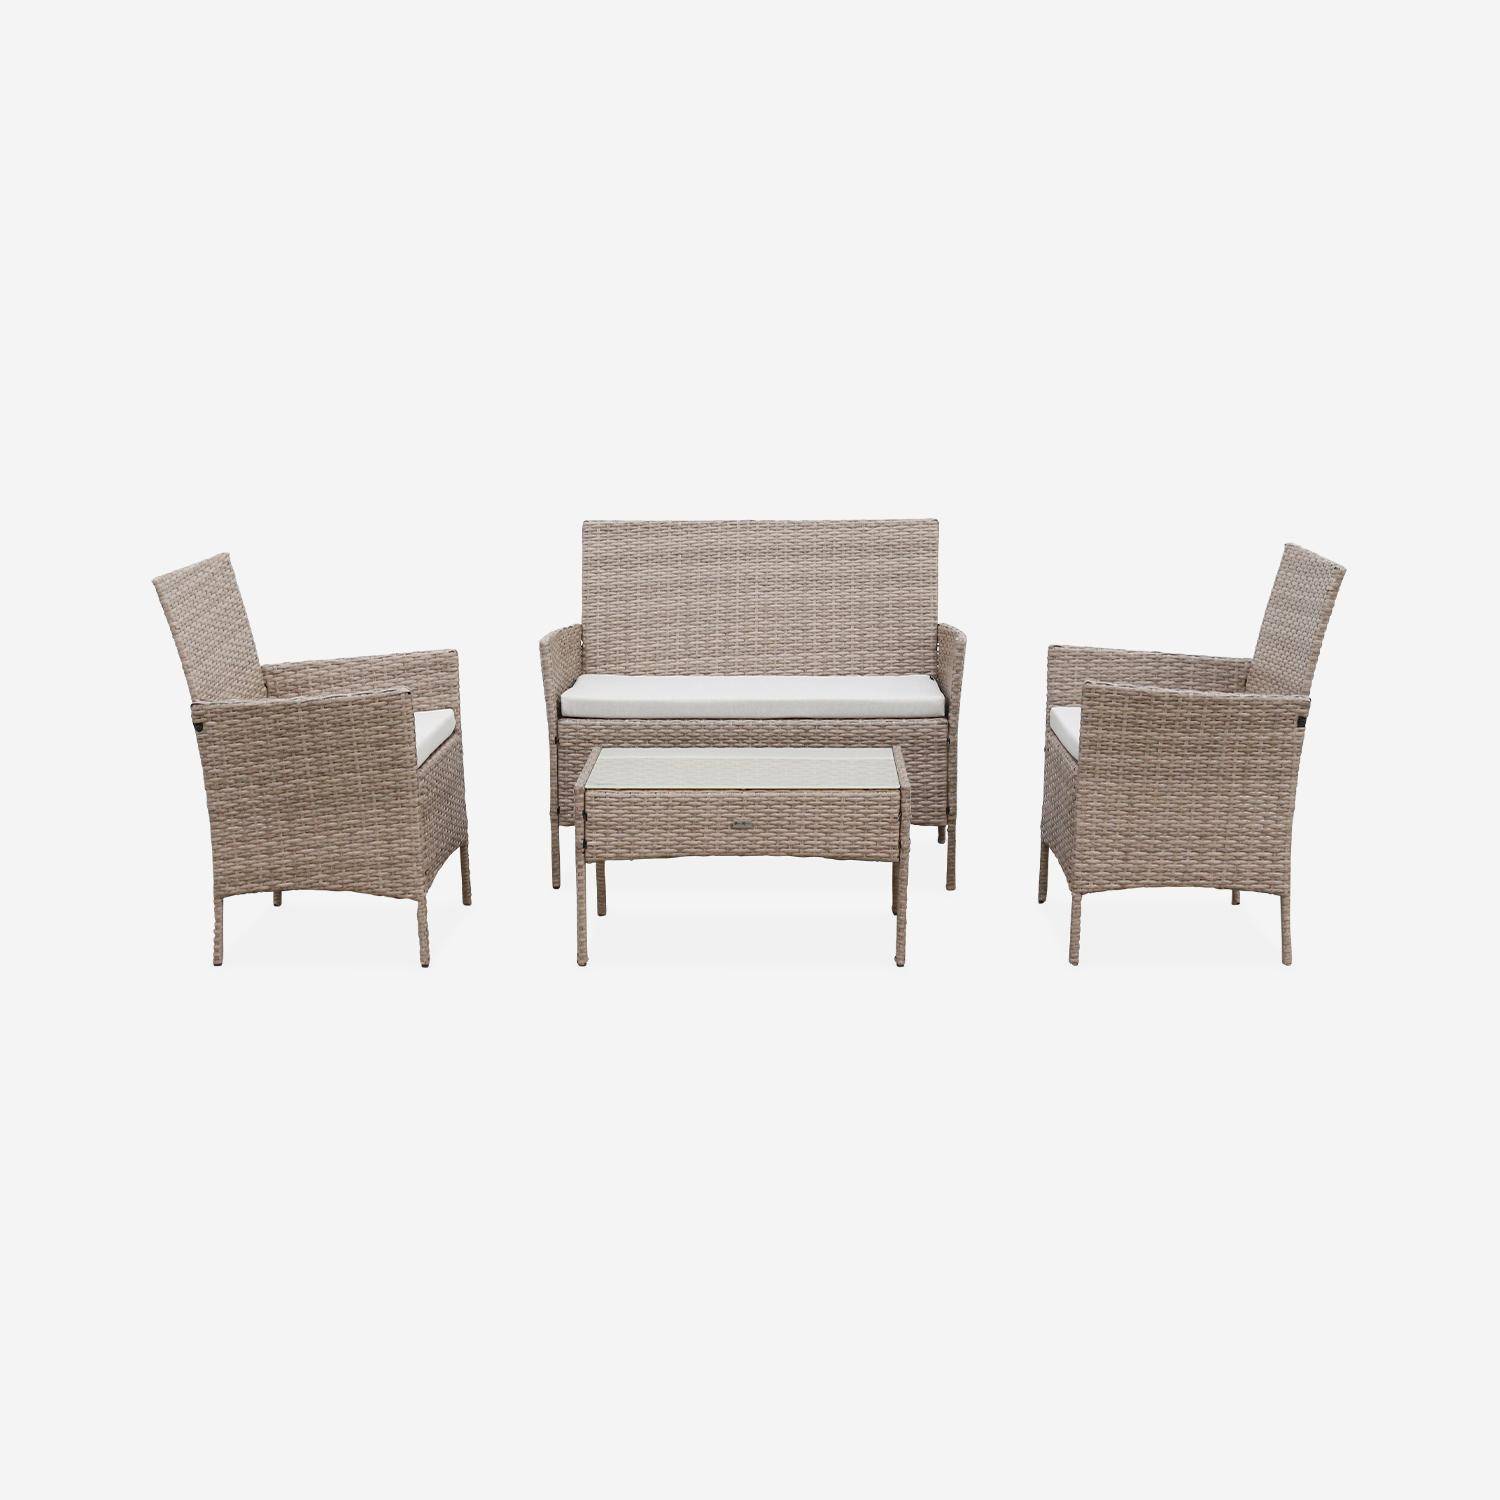 Conjunto de muebles de jardín de resina trenzada - Moltès - Natural, cojines beige - 4 plazas - 1 sofá, 2 sillones, una mesa de centro Photo4